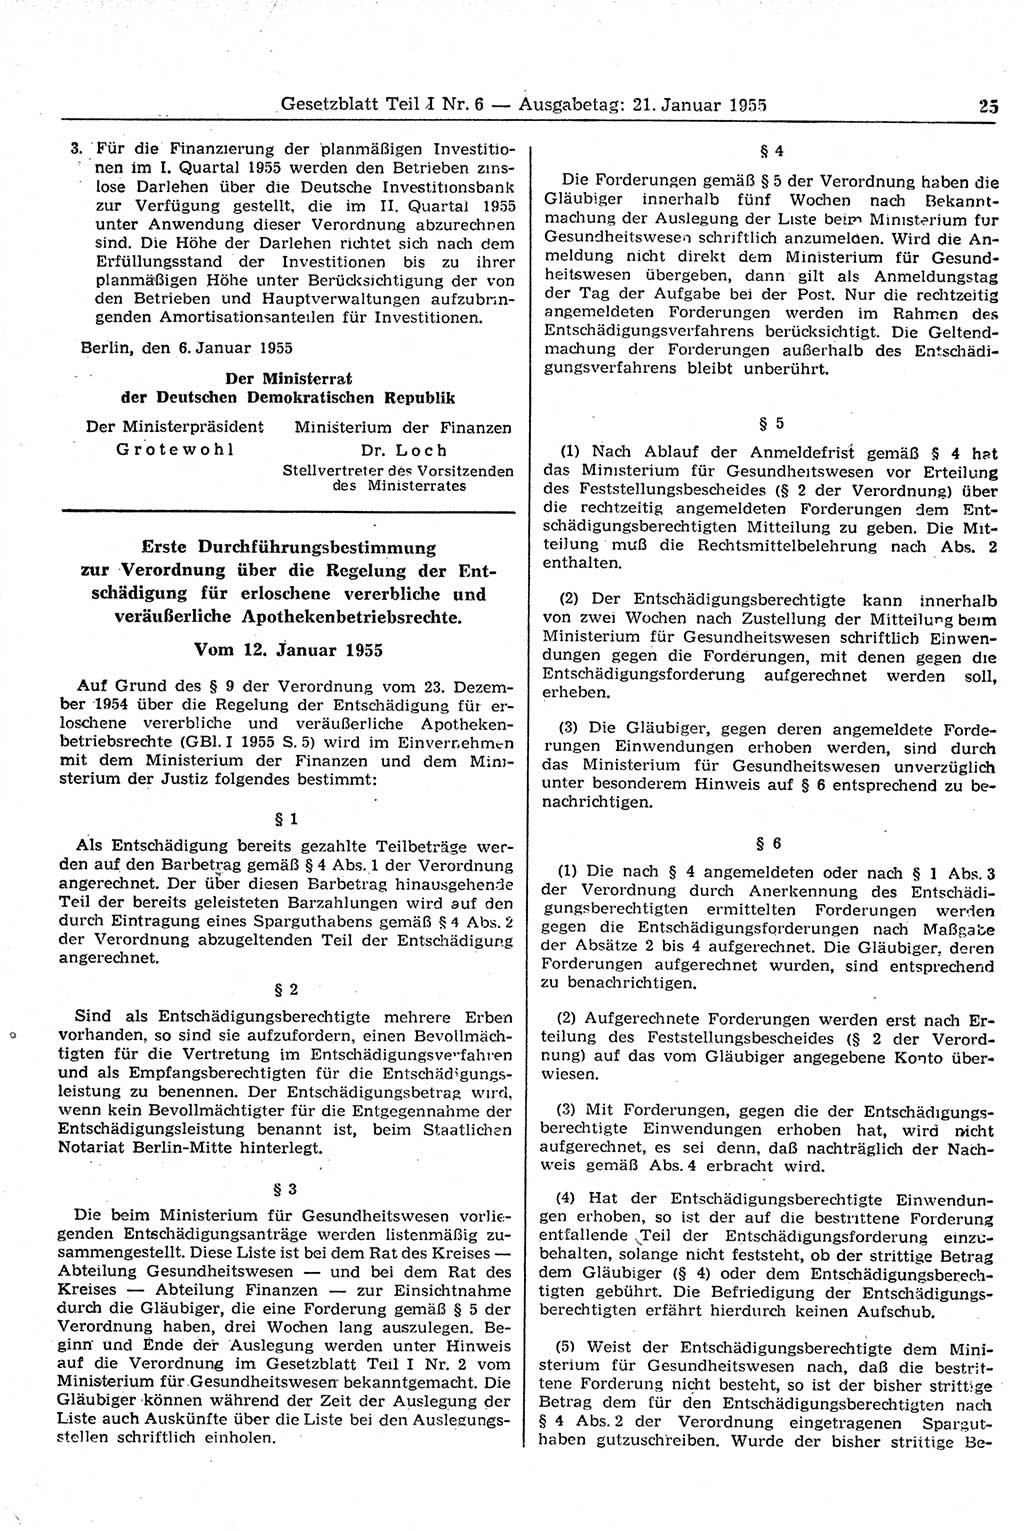 Gesetzblatt (GBl.) der Deutschen Demokratischen Republik (DDR) Teil Ⅰ 1955, Seite 25 (GBl. DDR Ⅰ 1955, S. 25)